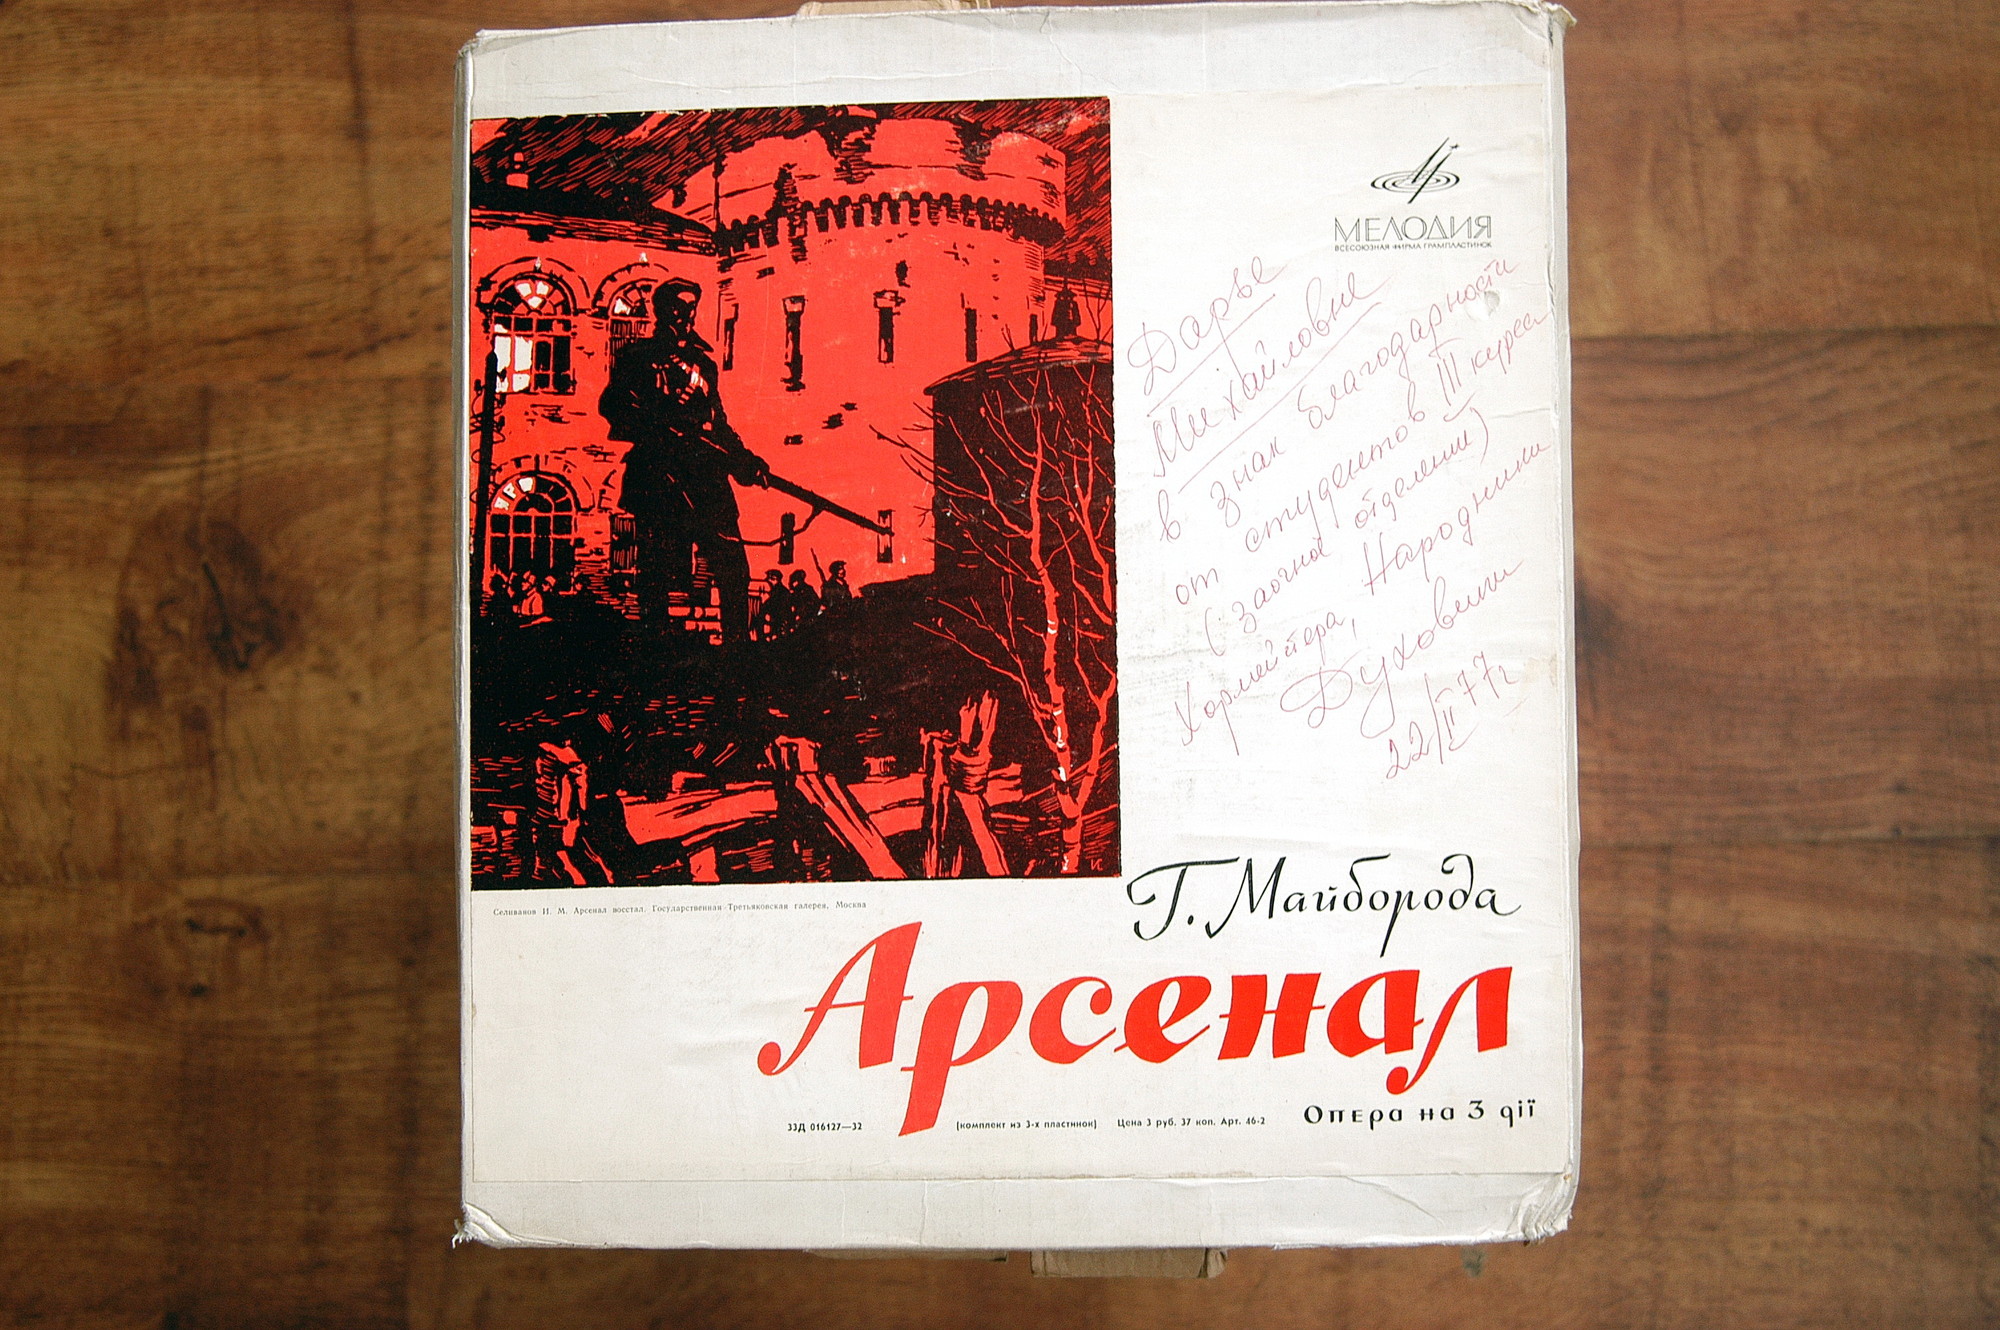 Г. МАЙБОРОДА (1913–1992): Опера «Арсенал» (на украинском языке)